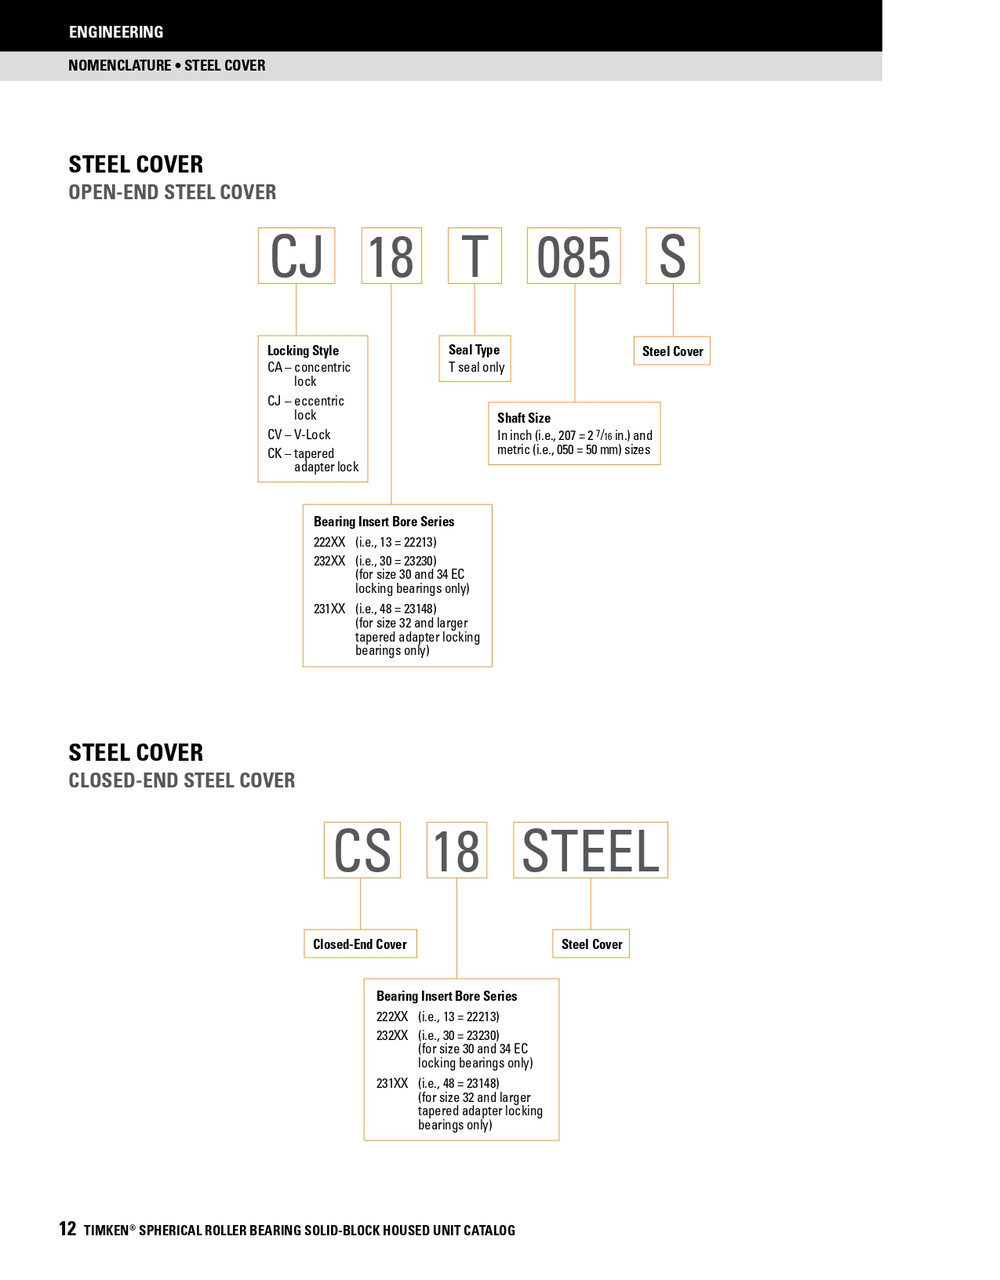 5-7/16" Timken SRB Steel Open End Cover w/Teflon Seal - TA/DV Taper Lock Bushing Type  CK32T507S